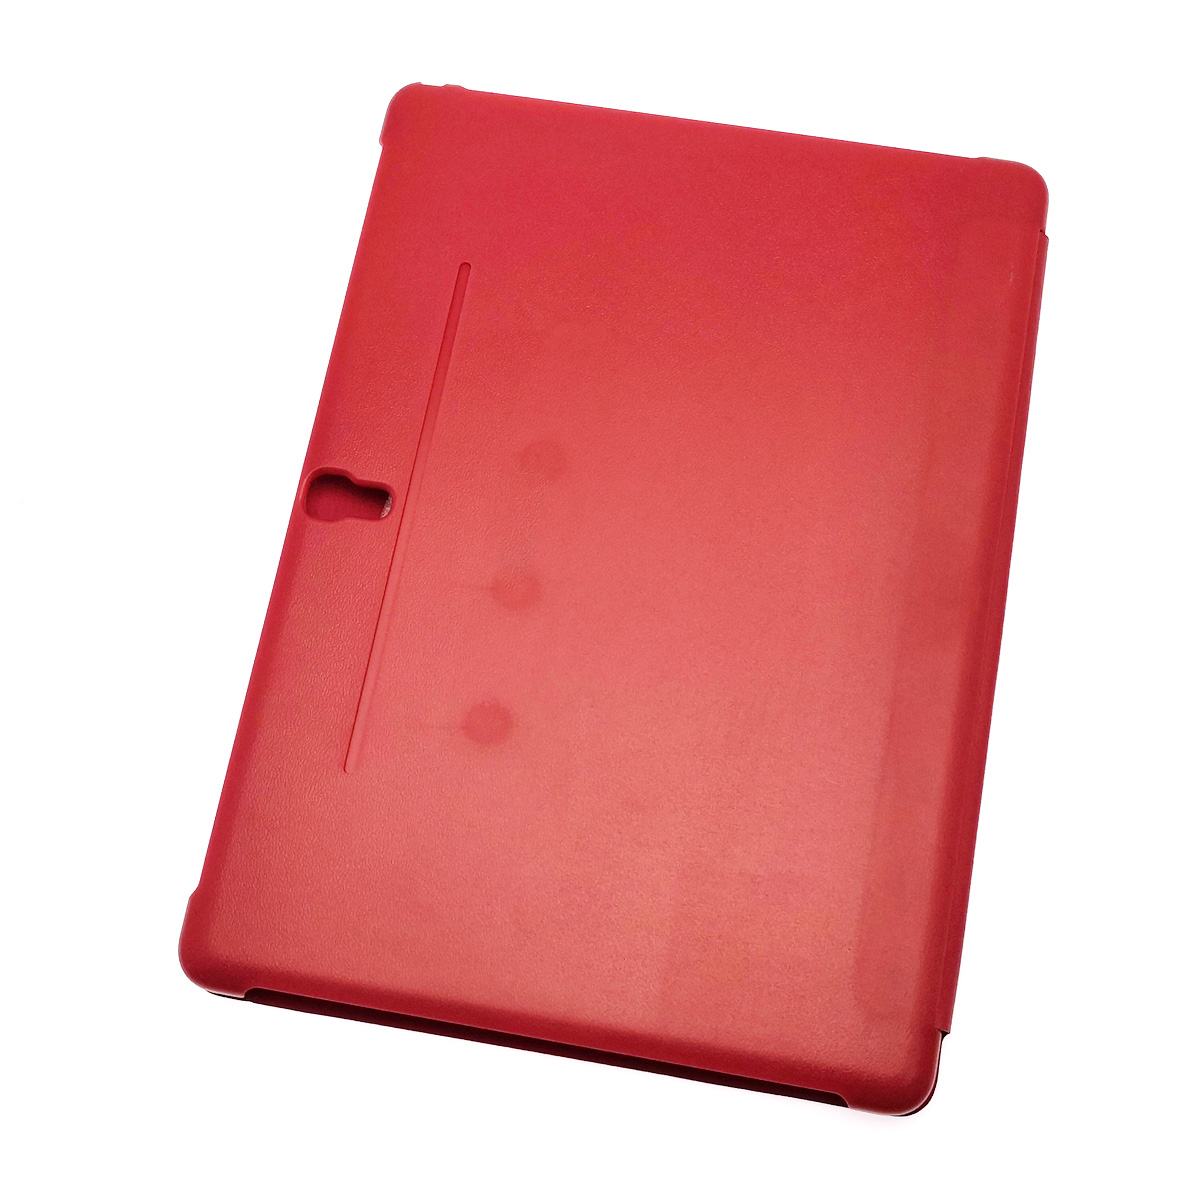 Чехол книжка для SAMSUNG Galaxy Tab S 10.5 (SM-T800, SM-T805), экокожа, пластик, цвет красный.